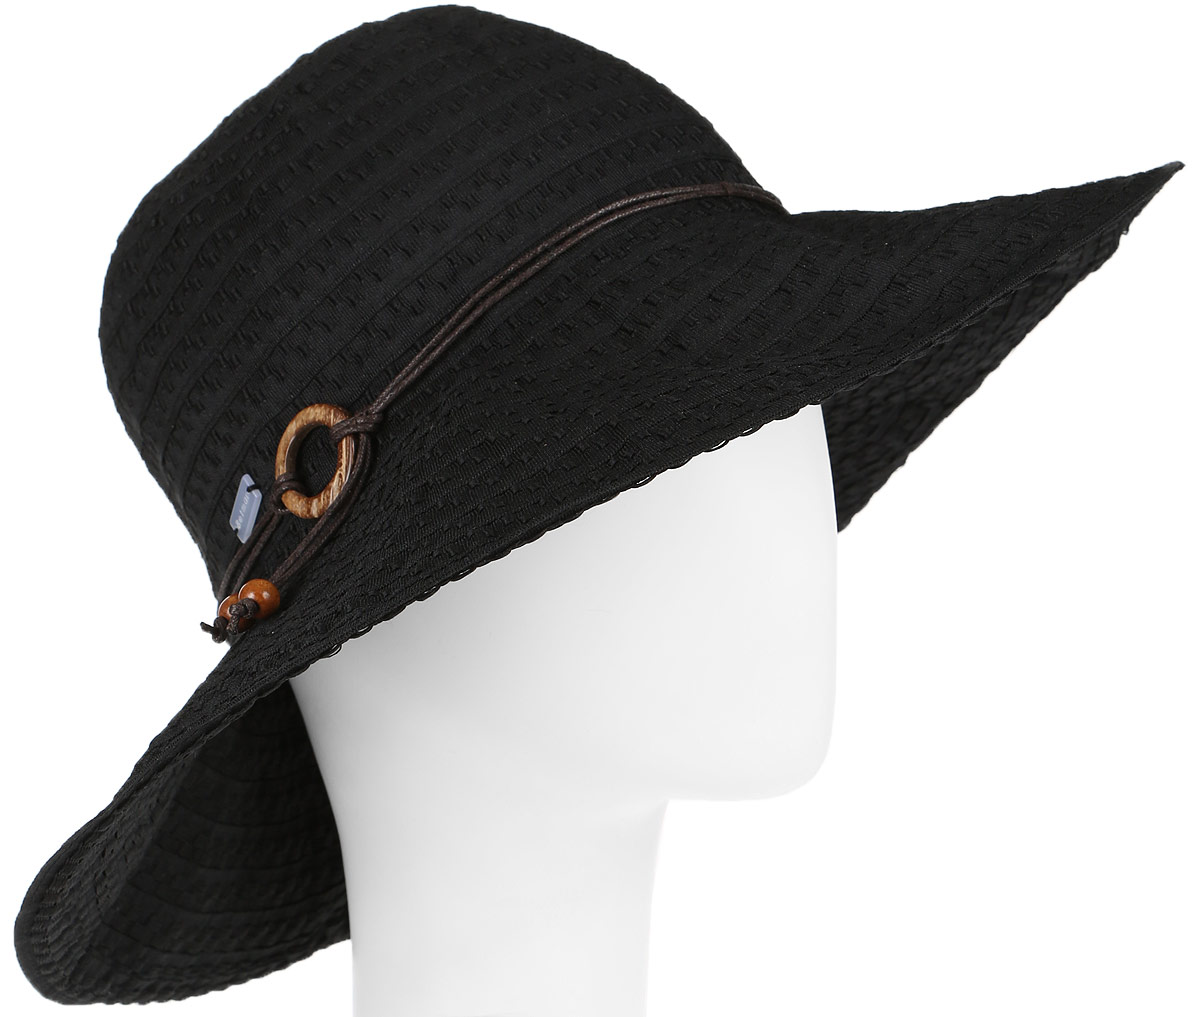 Шляпа женская Betmar Coconut Ring, цвет: черный. 31-087-09-00. Размер универсальный